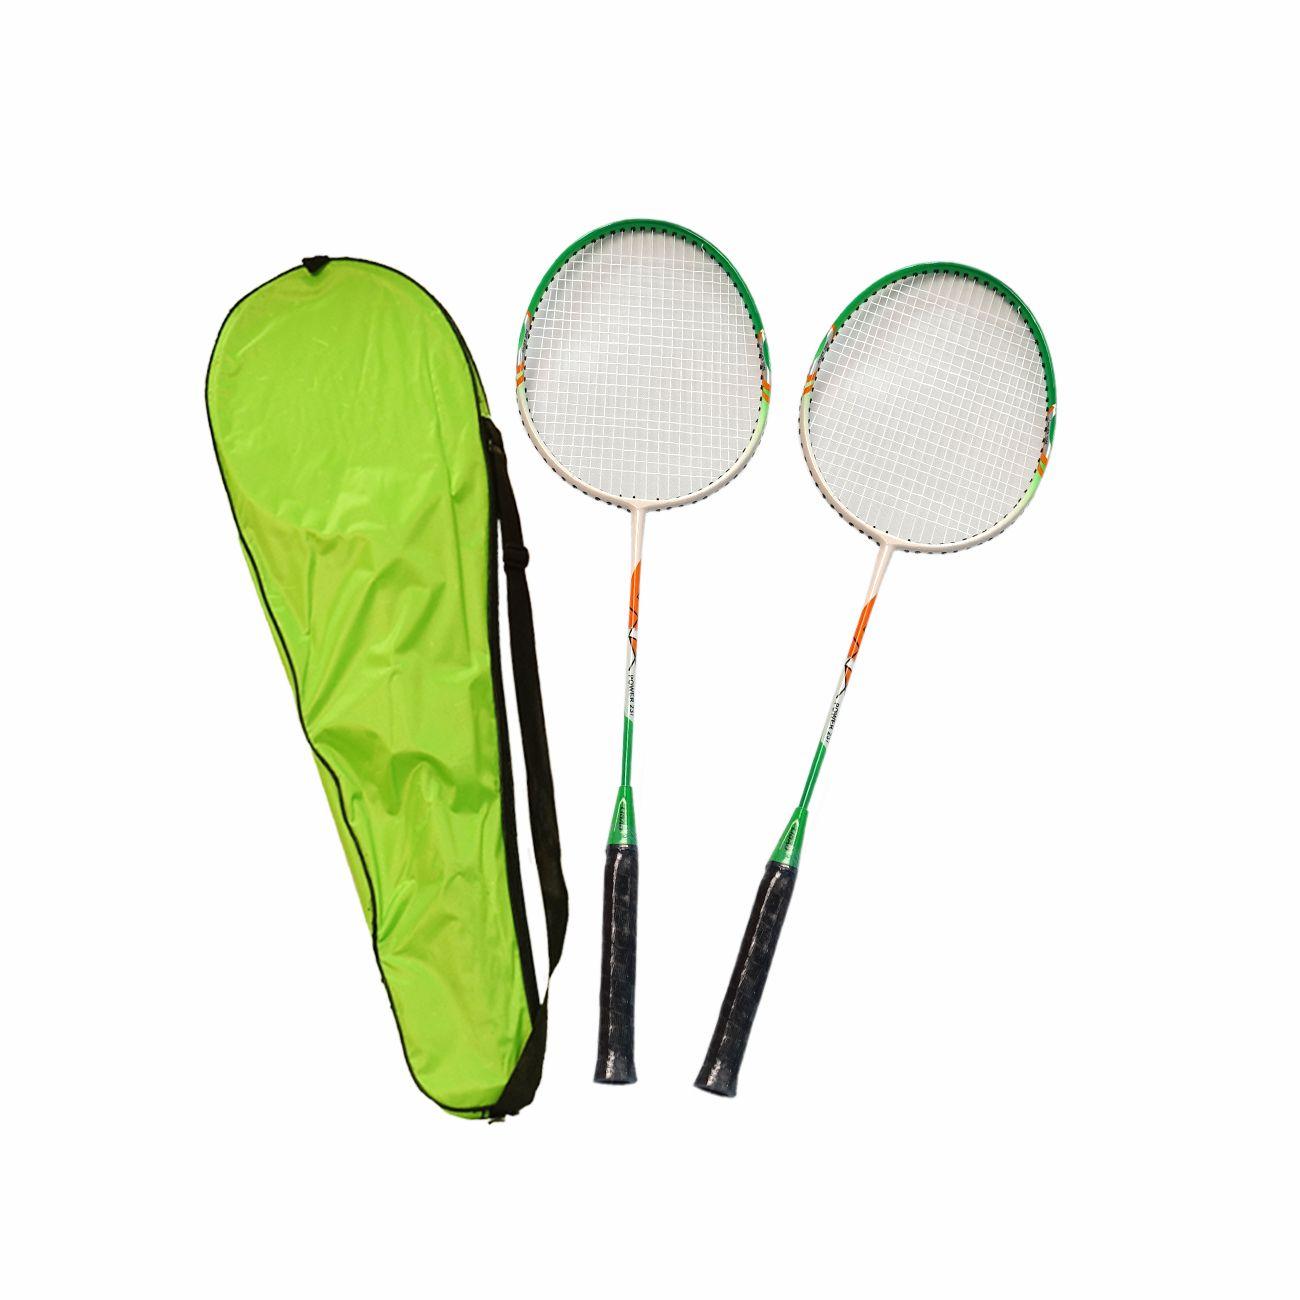 DENIS Deluxe reketi za badminton zeleni